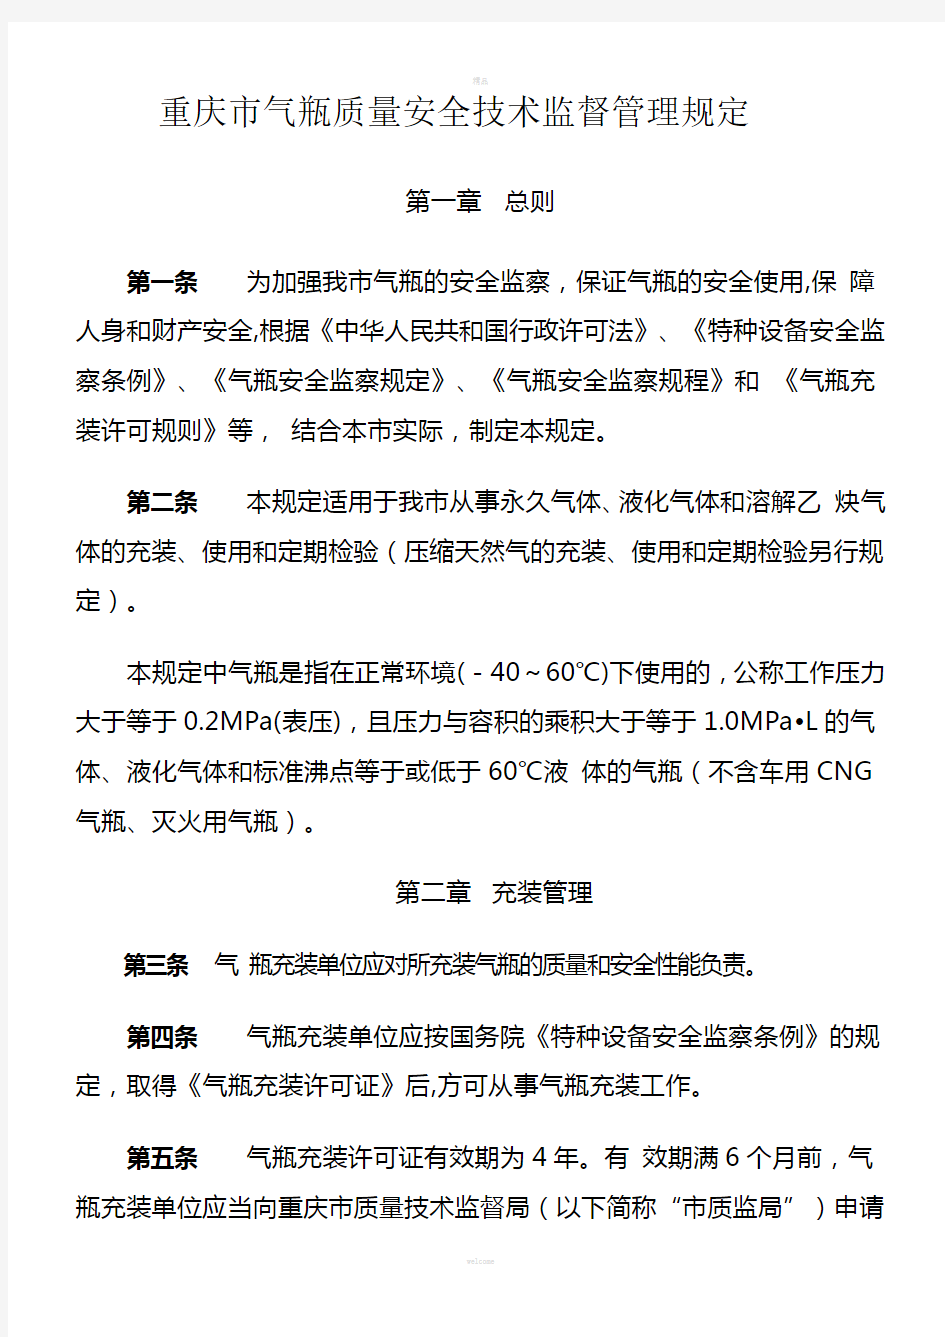 重庆市气瓶质量安全技术监督管理规定